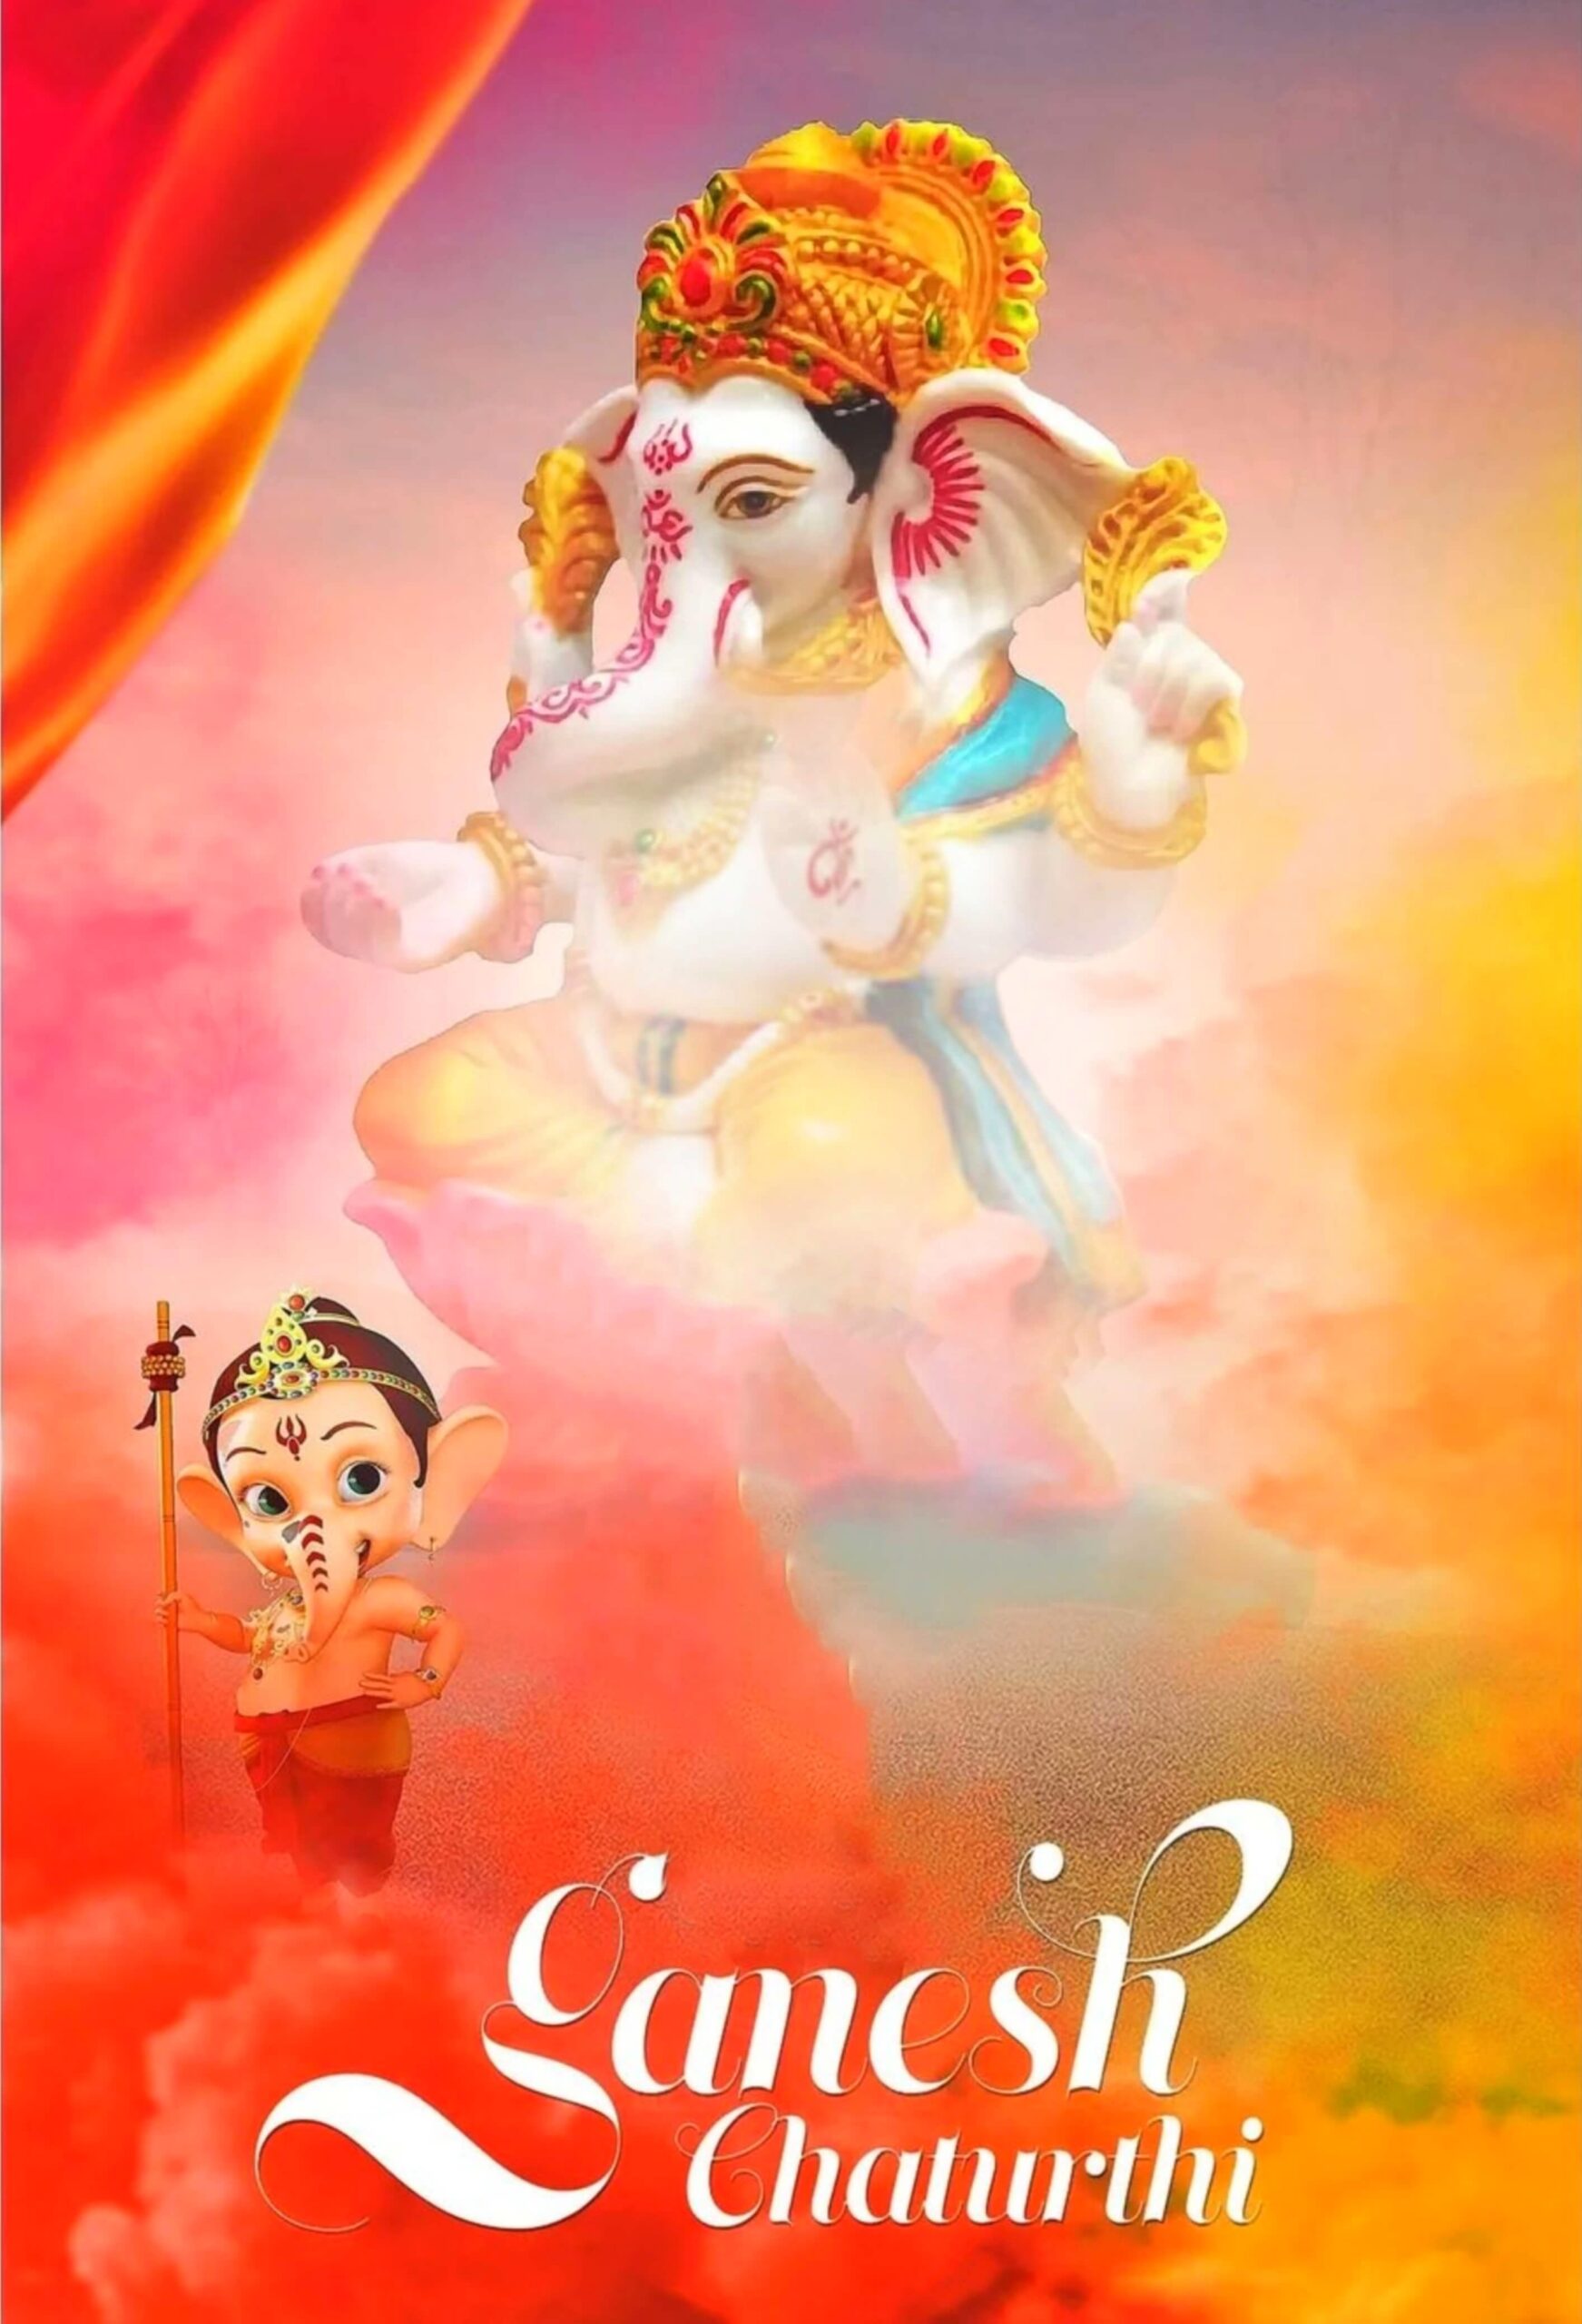 Ganesh Chaturthi Background With Lord Ganesha 